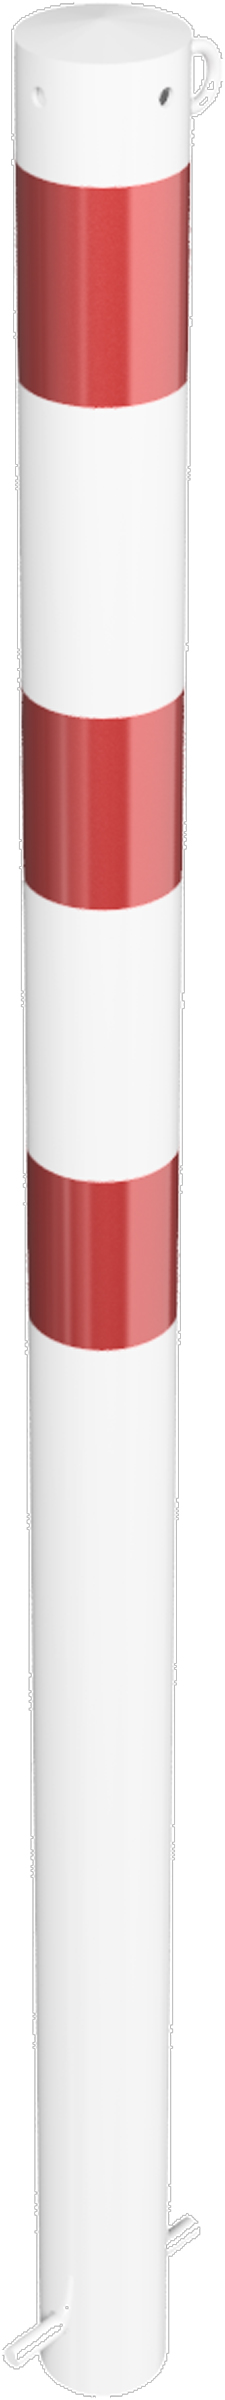 Schake Absperrpfosten OE Ø 76 mm mit 1 Öse weiß | rot